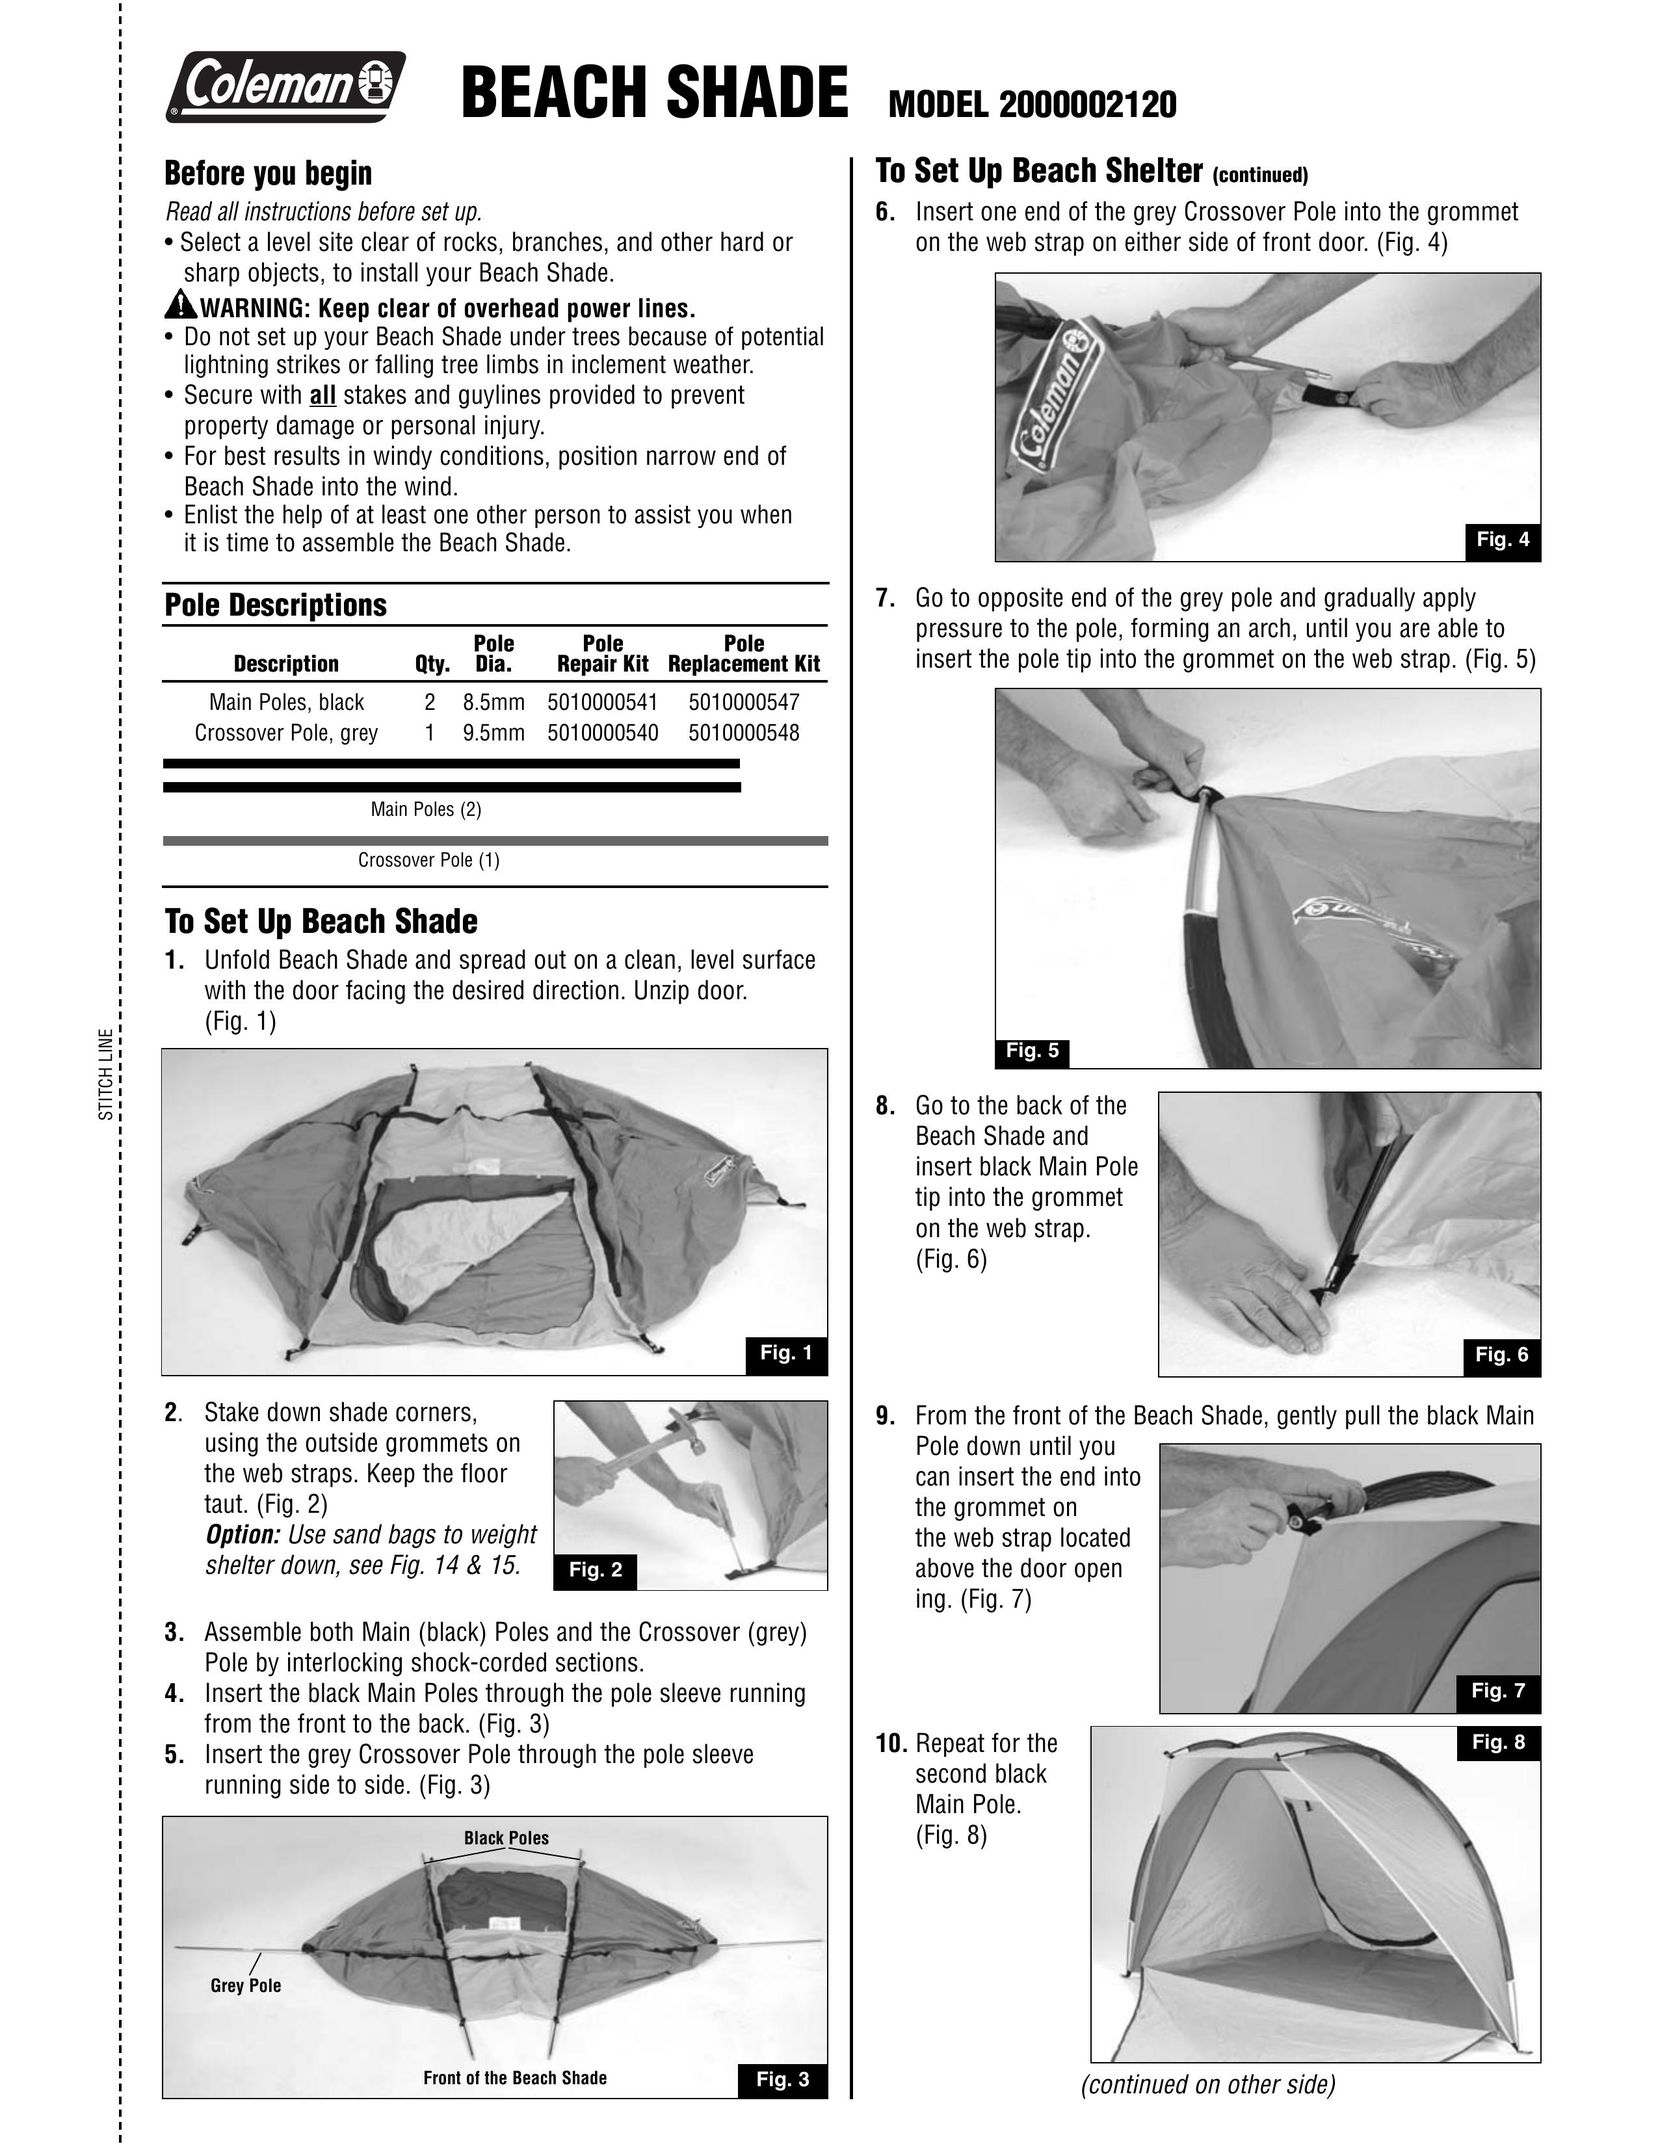 Coleman 2000002120 Tent User Manual